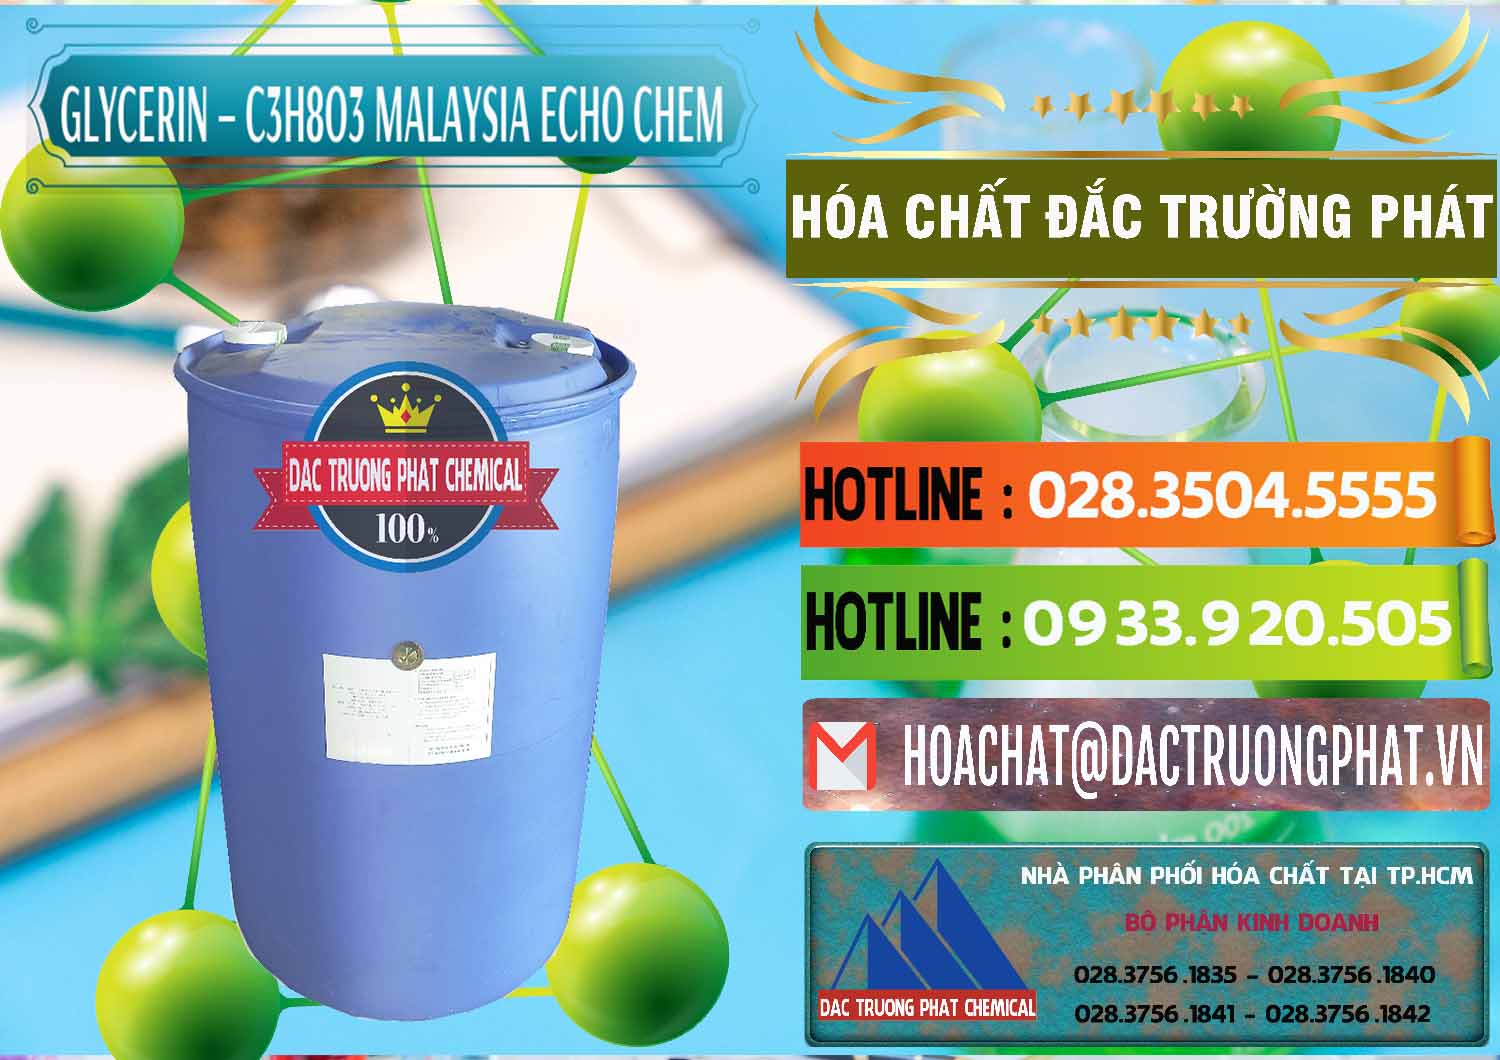 Nơi cung cấp & bán C3H8O3 - Glycerin 99.7% Echo Chem Malaysia - 0273 - Cty chuyên nhập khẩu & cung cấp hóa chất tại TP.HCM - cungcaphoachat.com.vn